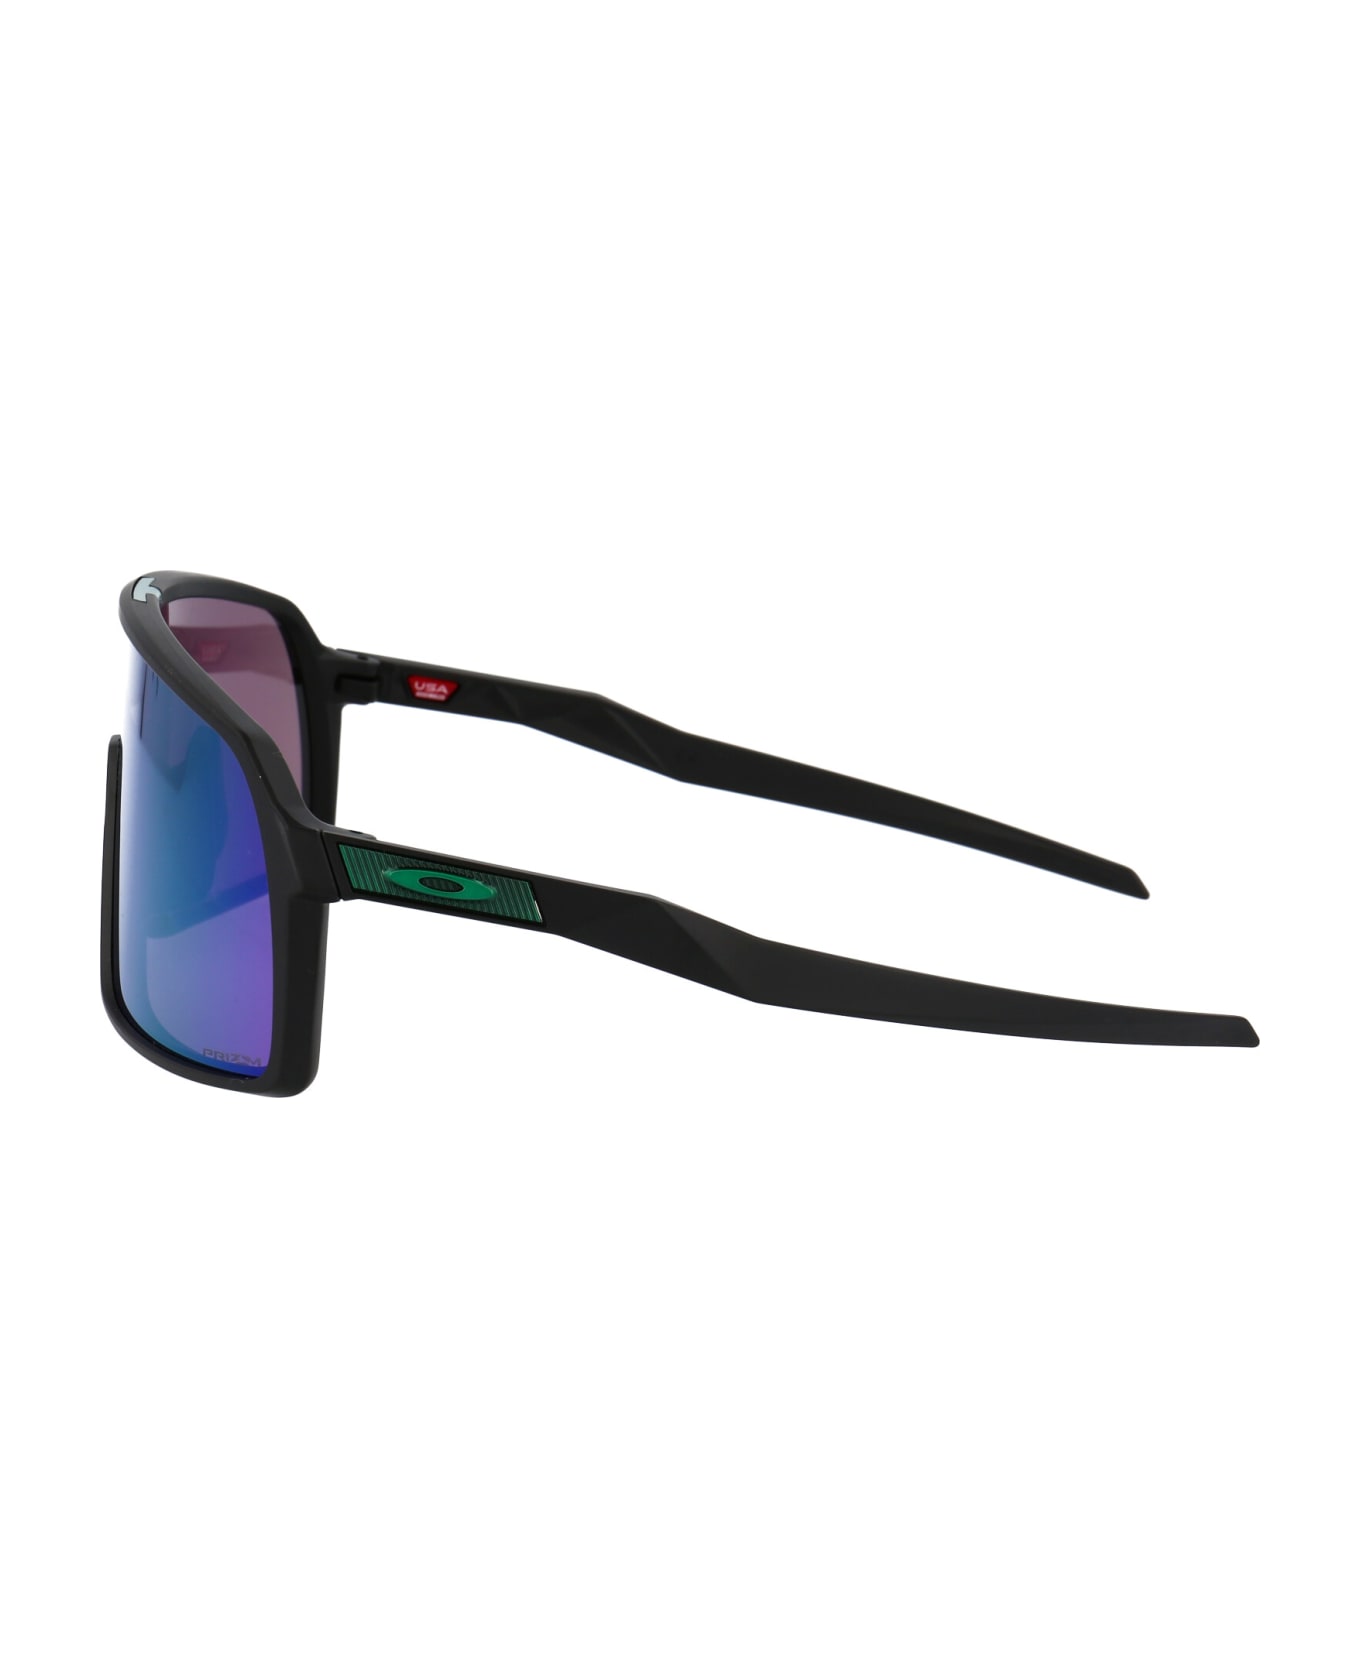 Oakley Sutro Sunglasses - MultiColour サングラス